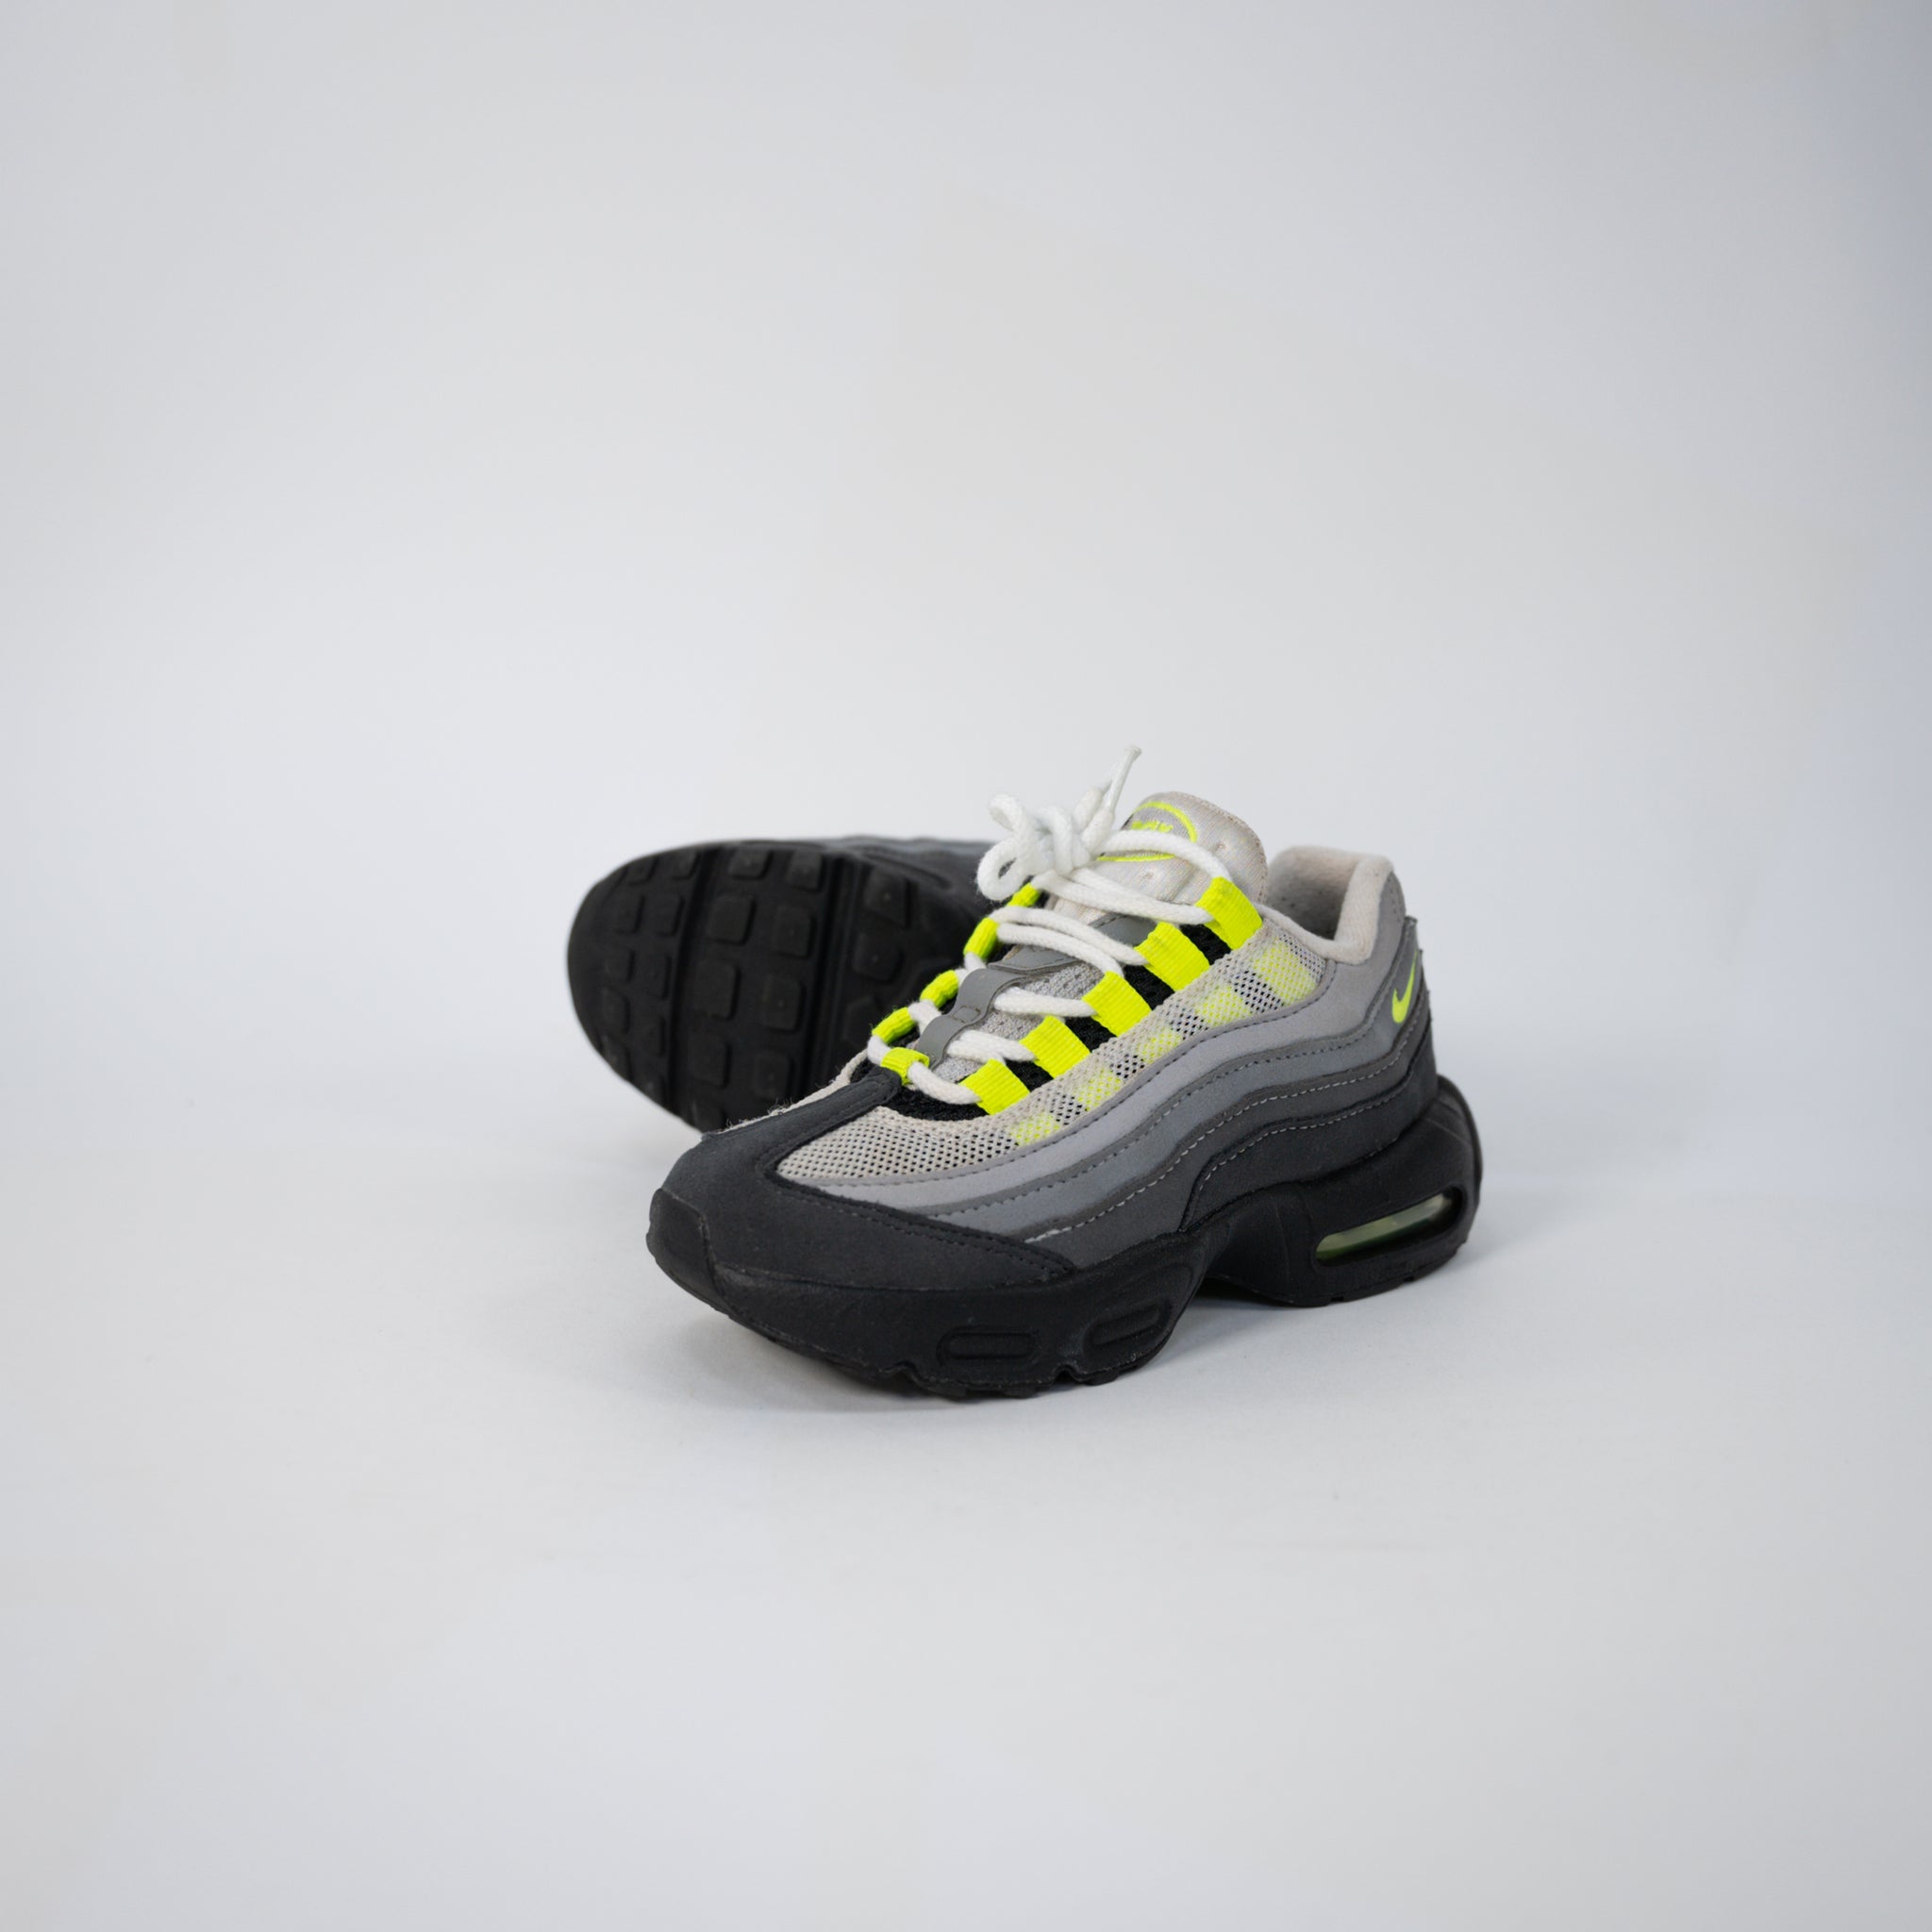 REC0523 NIKE AIR OG NEON PS 2020 12.5C / UK 12 - Sneakers ER